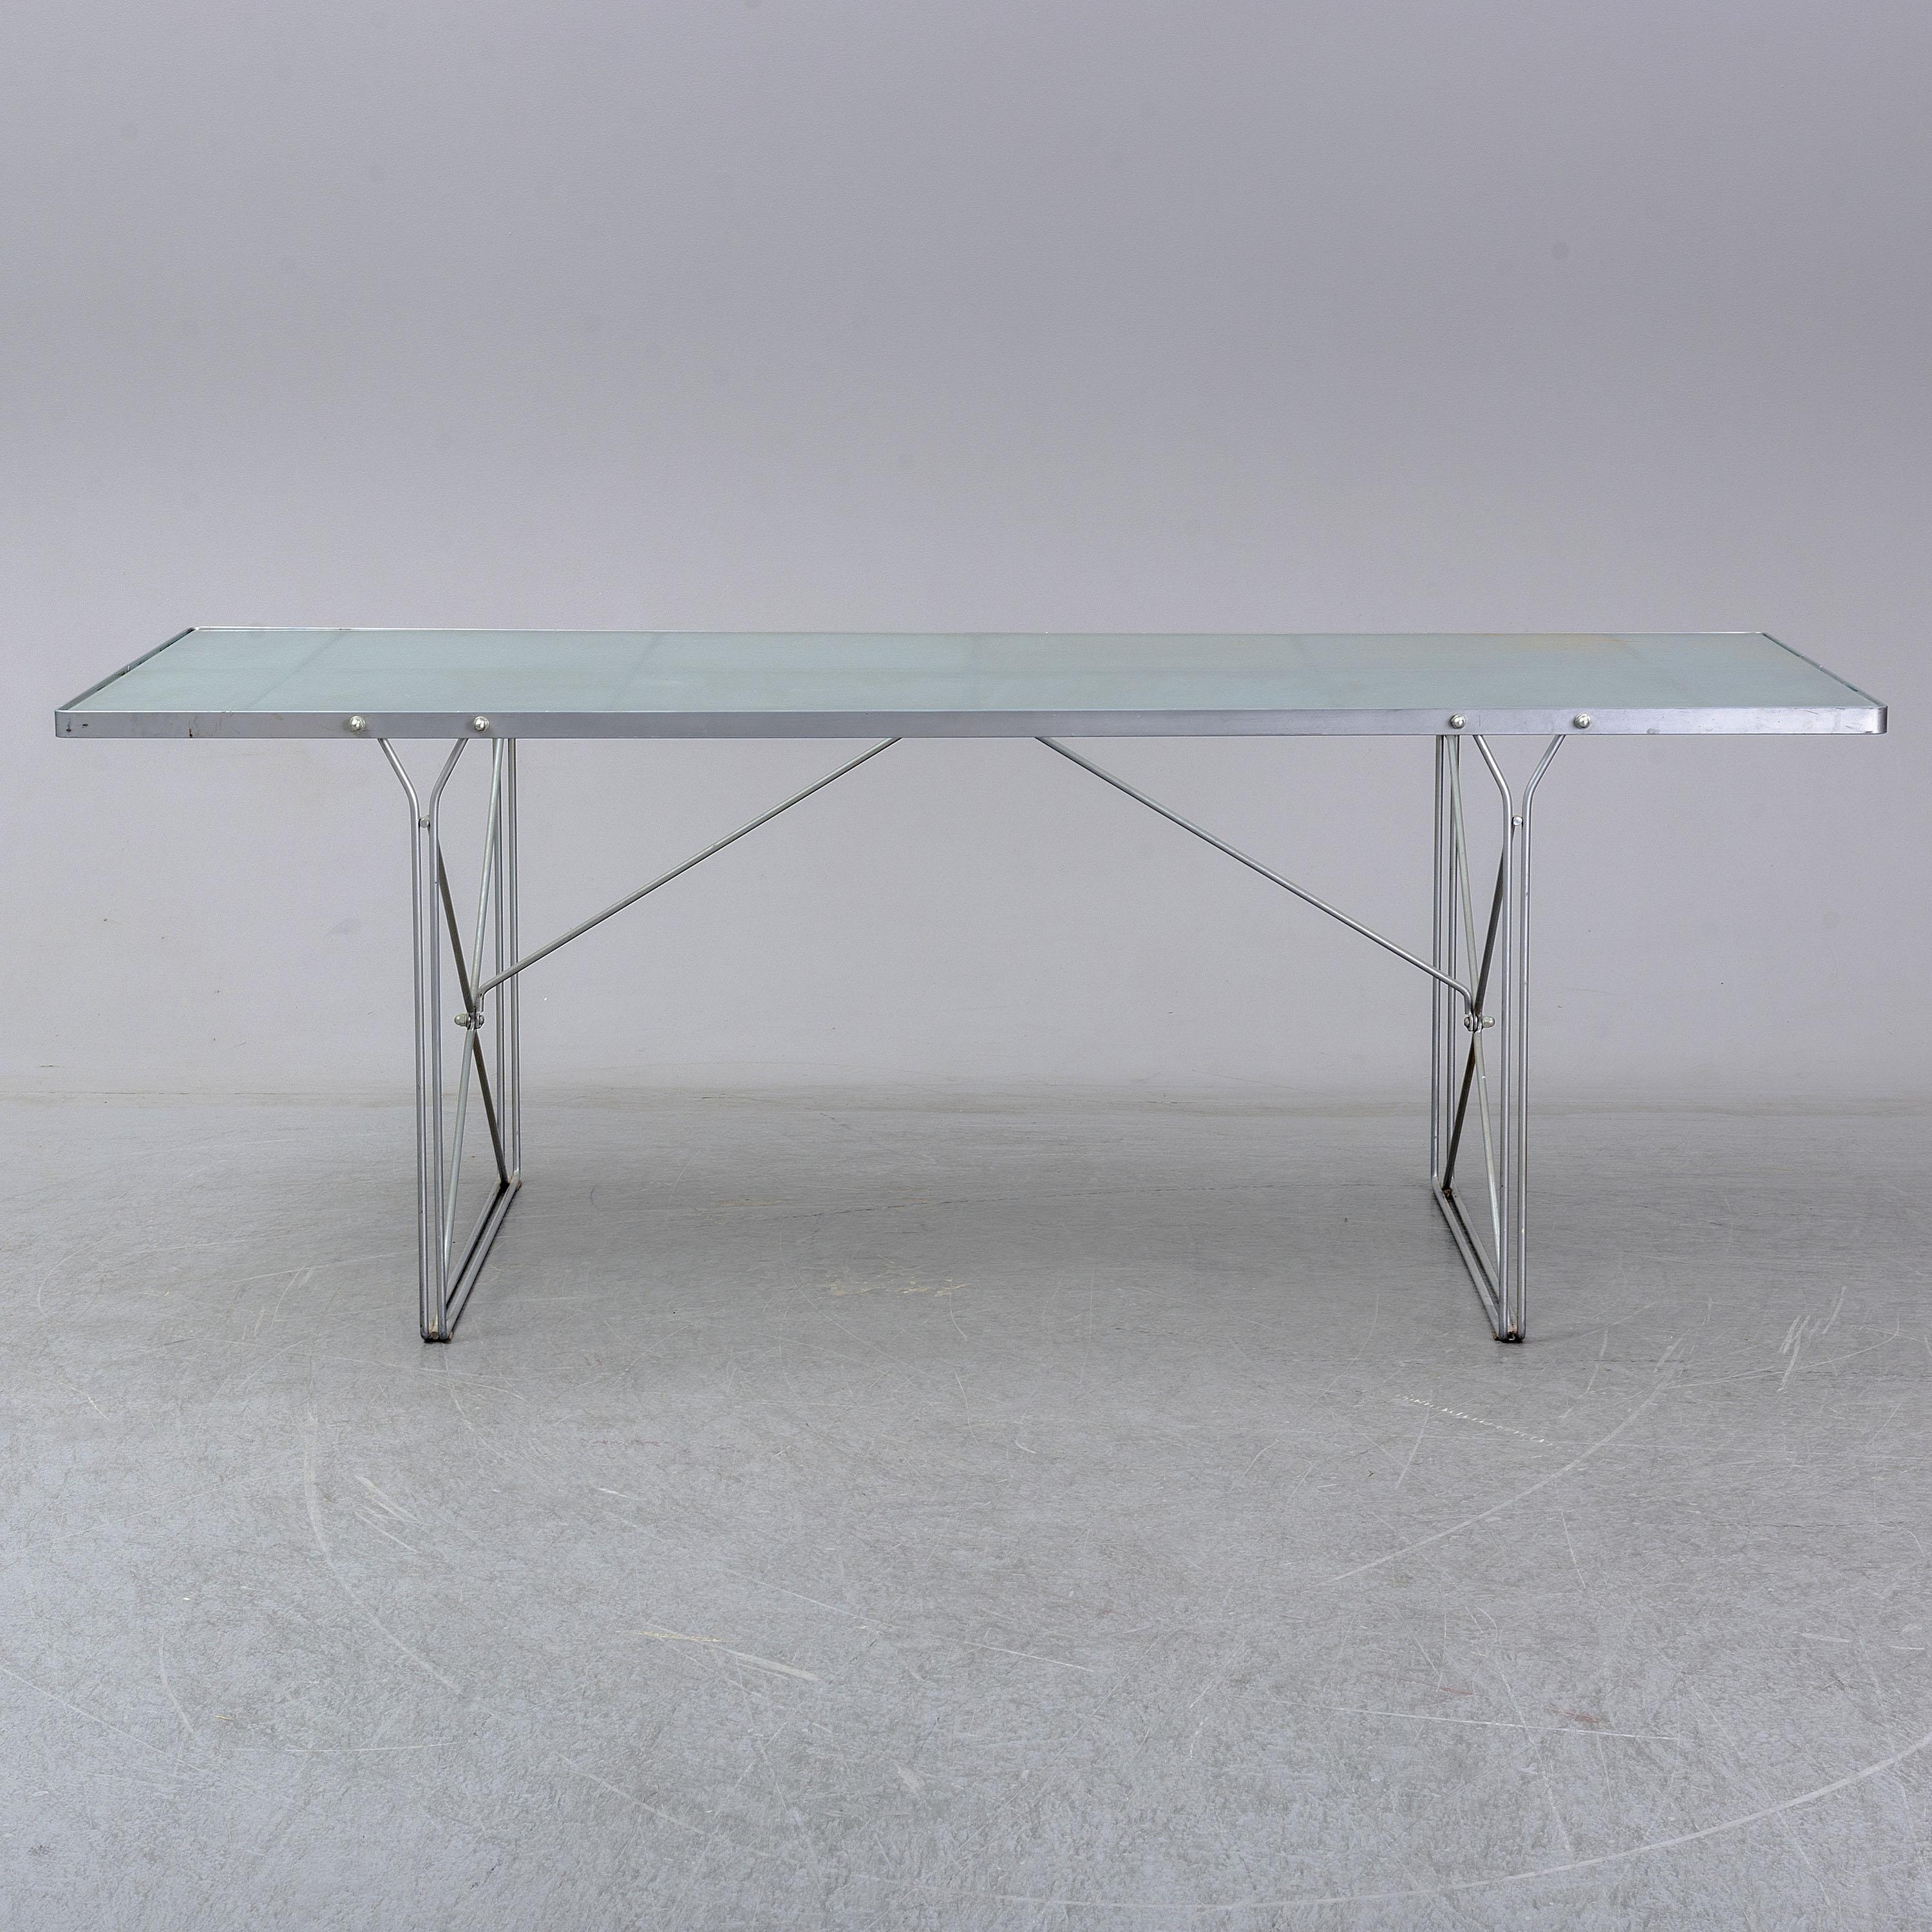 Vintage-Esstisch von Ikea aus der kultigen MOMENT Collection'S von Niels Gammelgaard

Entworfen und hergestellt in den 1980er Jahren


Der Tisch hat eine Platte aus mattiertem Glas und ein Gestell aus pulverbeschichtetem Stahl in mattem